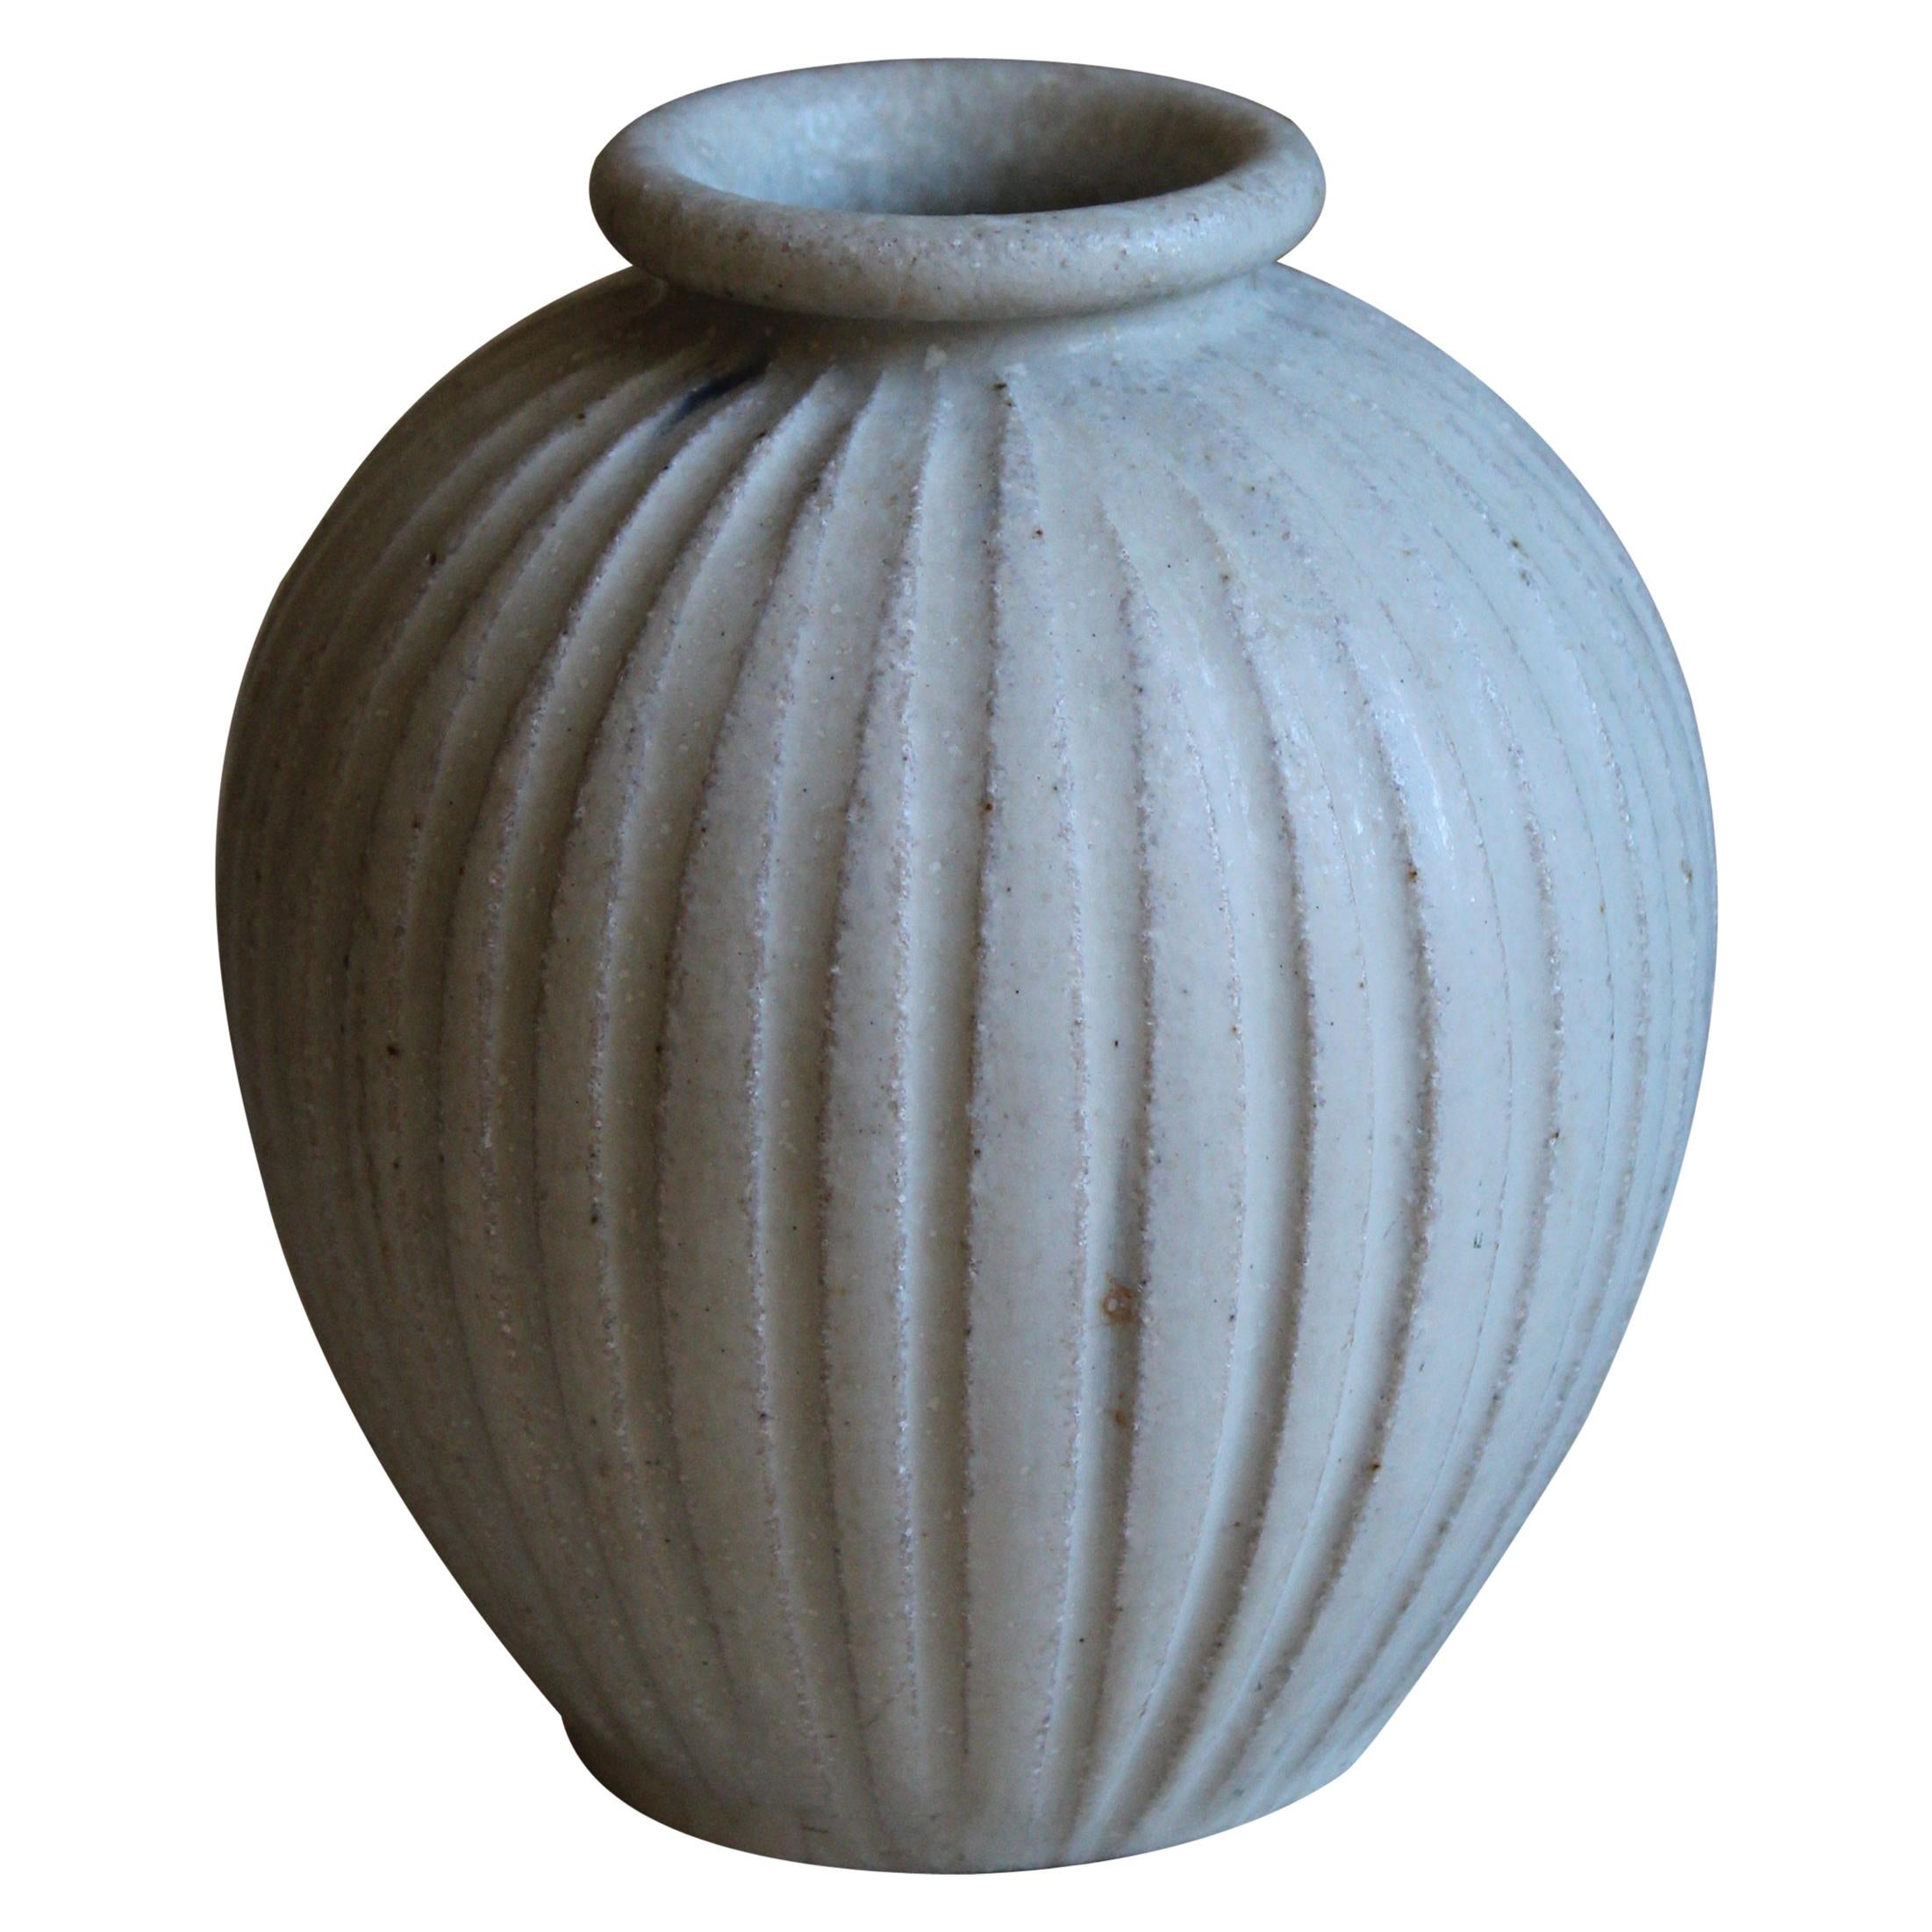 Arne Bang, Small Vase, Grey Glazed Stoneware, Studio, Denmark, c. 1927